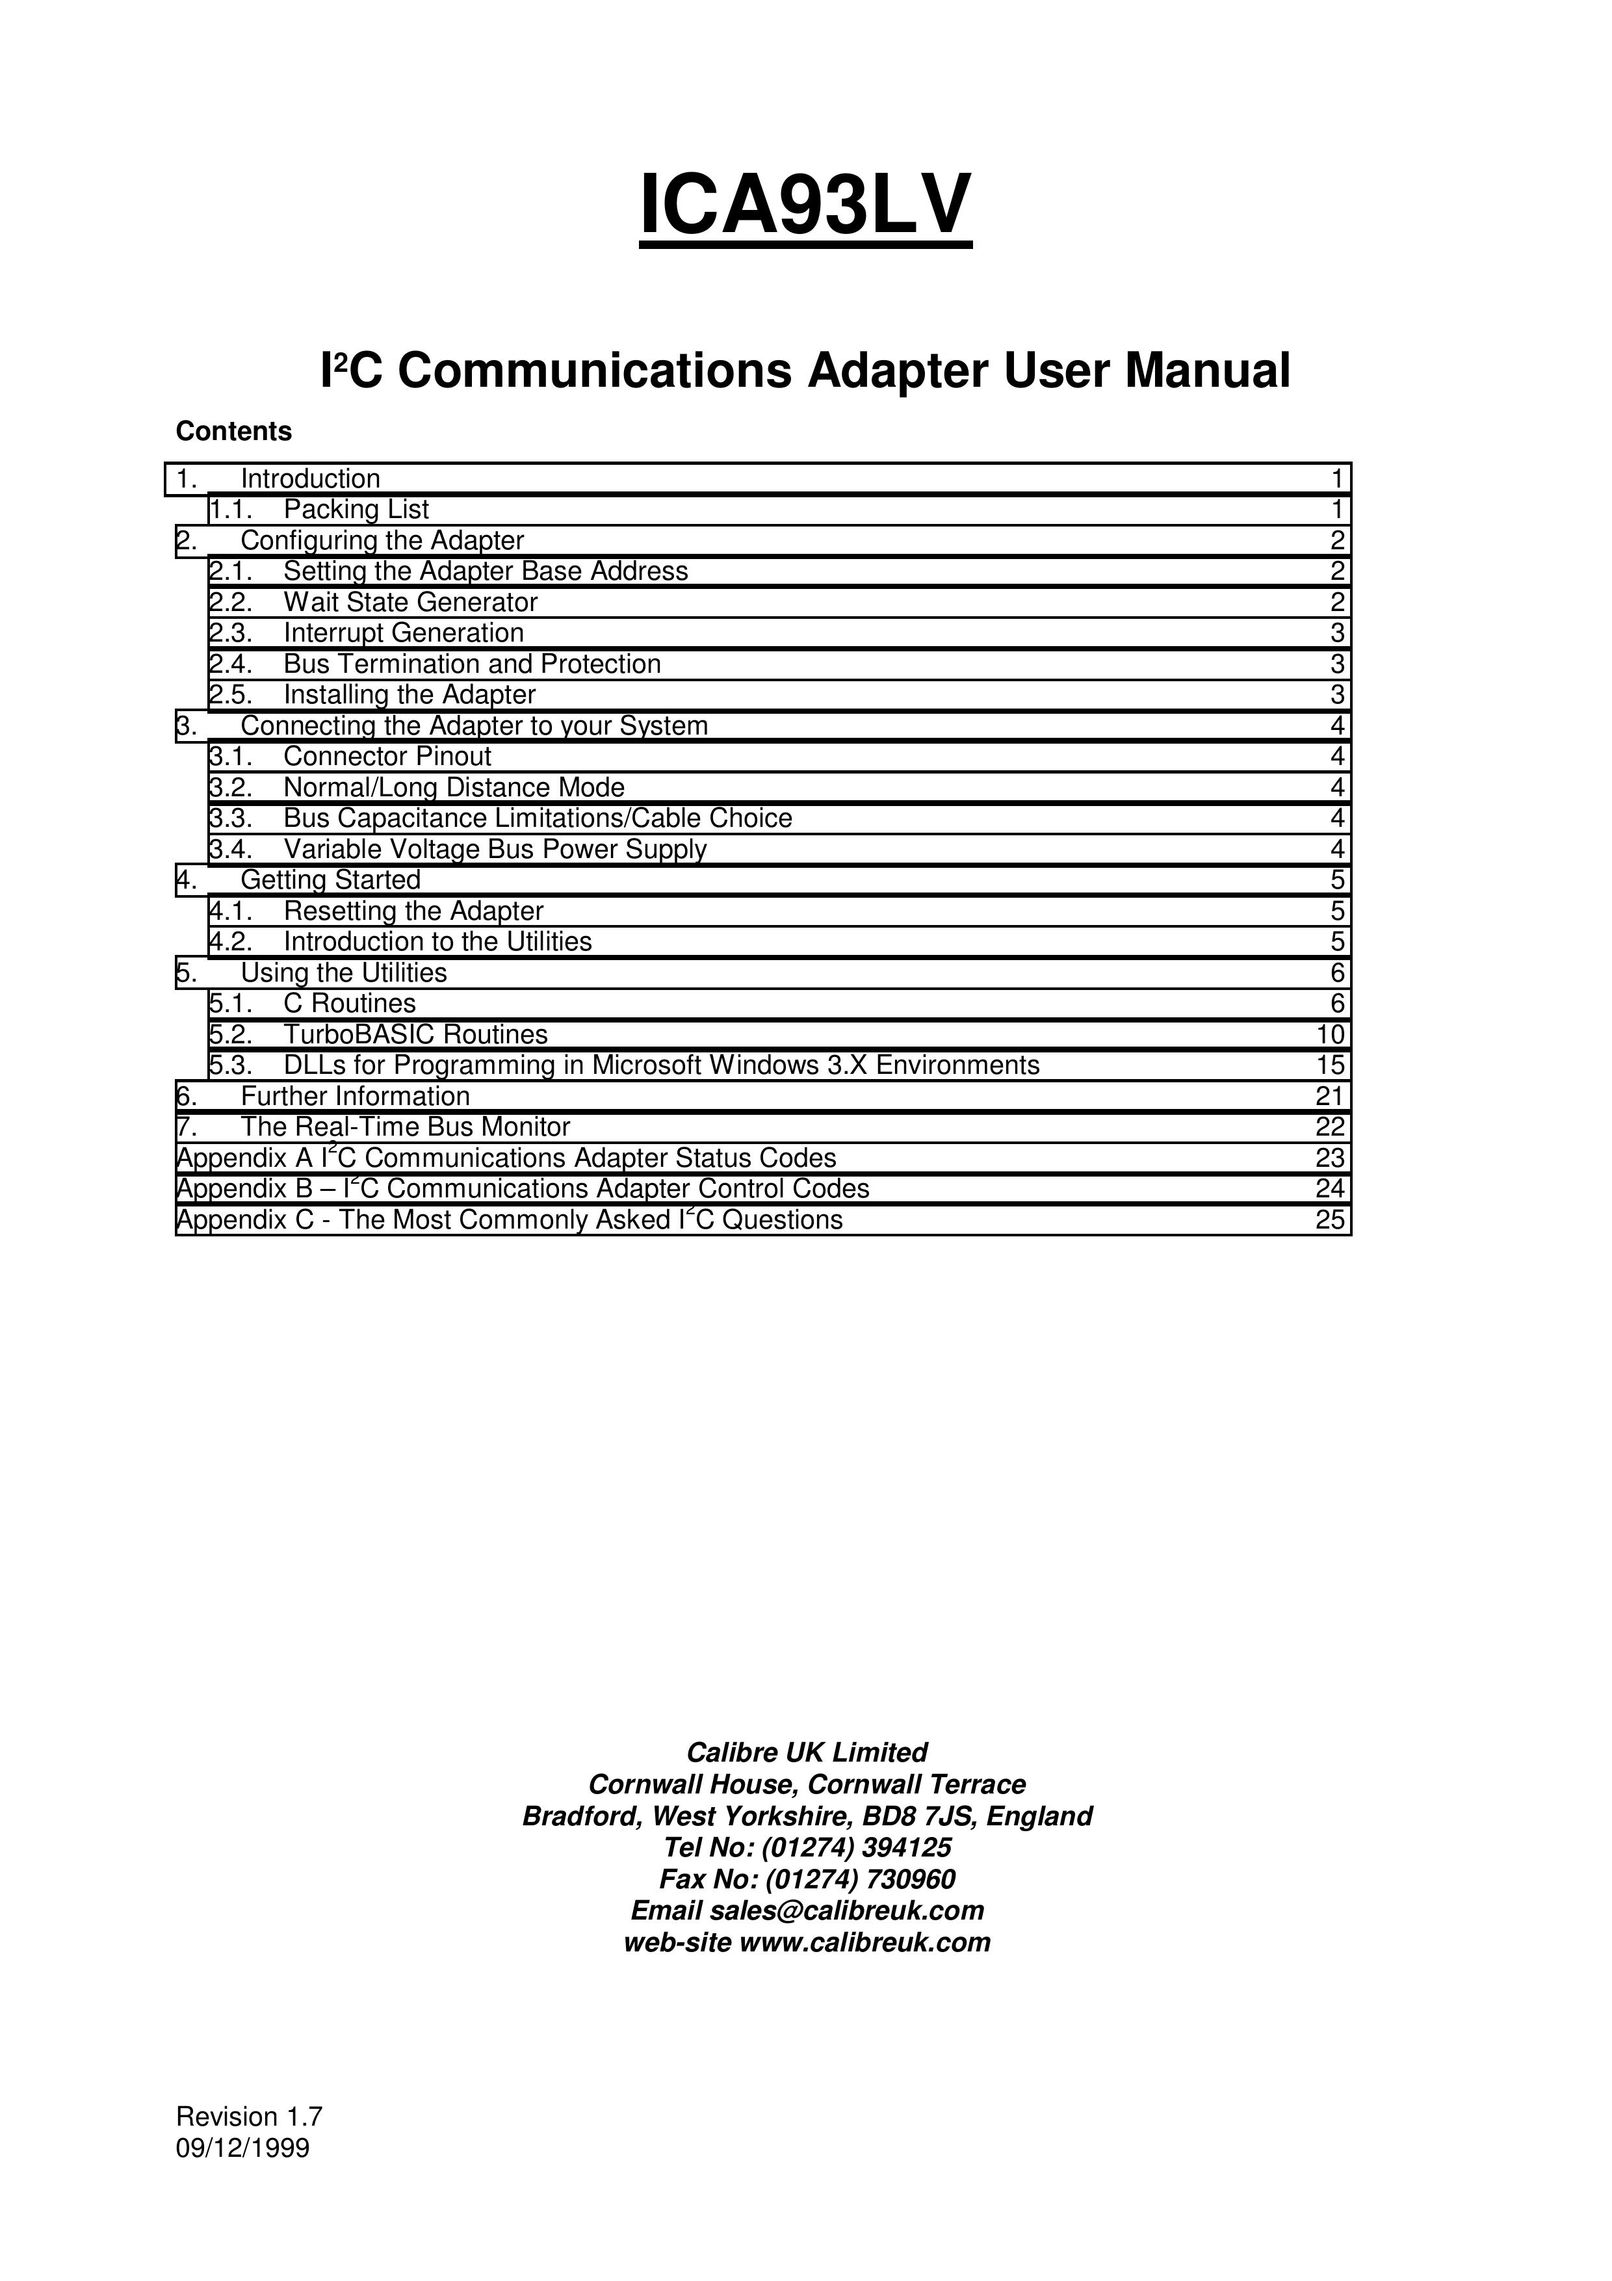 Calibre UK ICA93LV Network Card User Manual